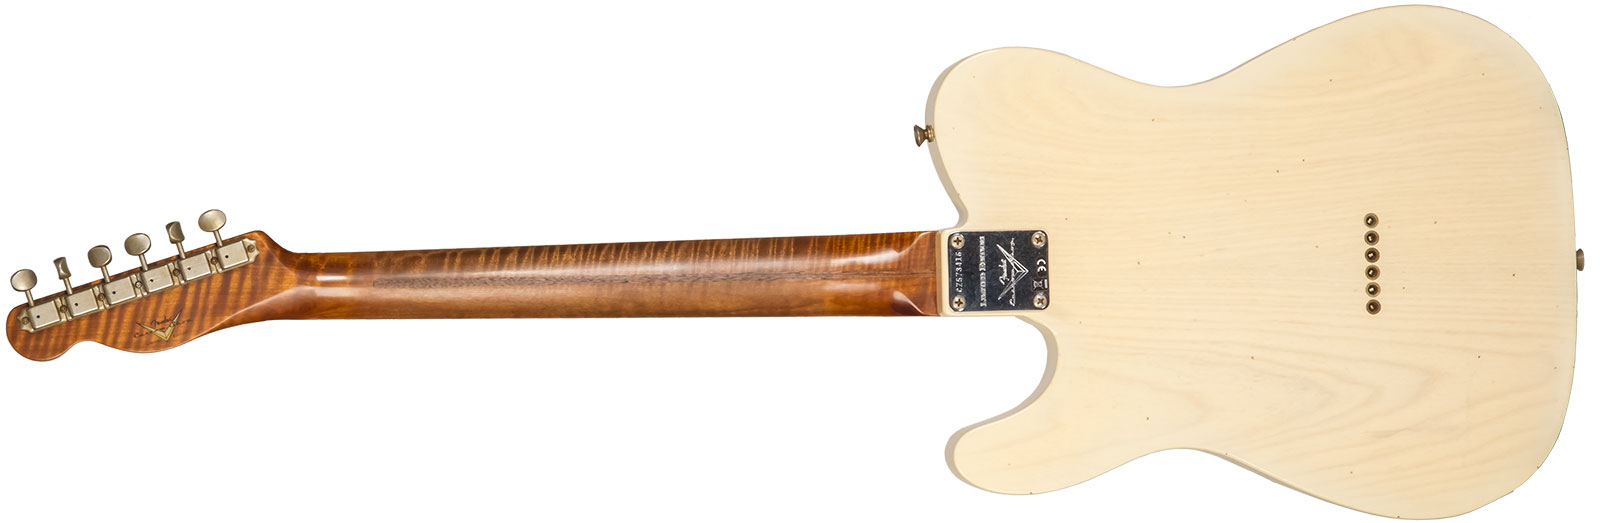 Fender Custom Shop Tele 1955 2s Ht Mn #cz573416 - Journeyman Relic Nocaster Blonde - Guitare Électrique Forme Tel - Variation 1